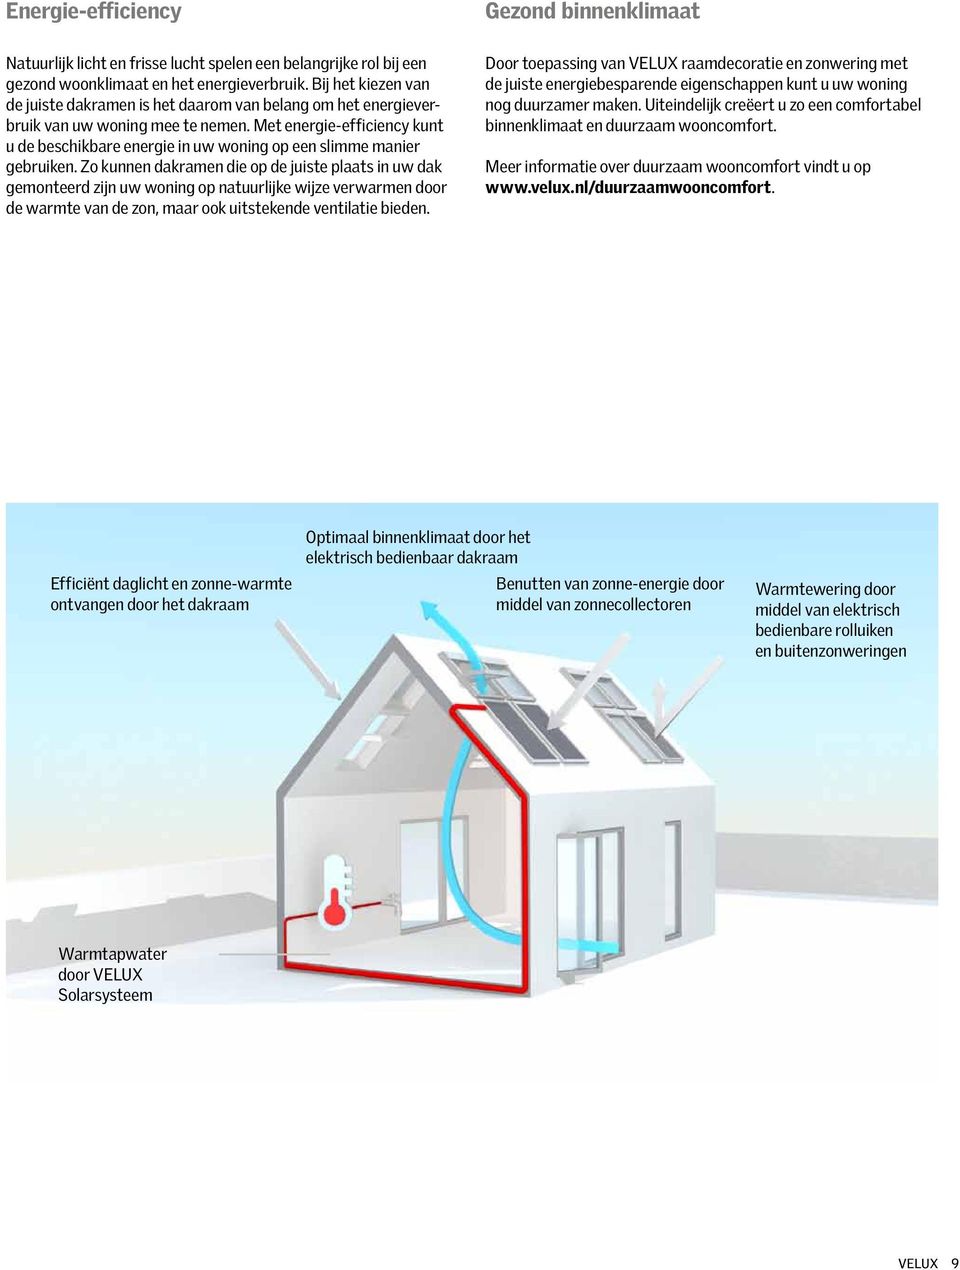 Met energie-efficiency kunt u de beschikbare energie in uw woning op een slimme manier gebruiken.